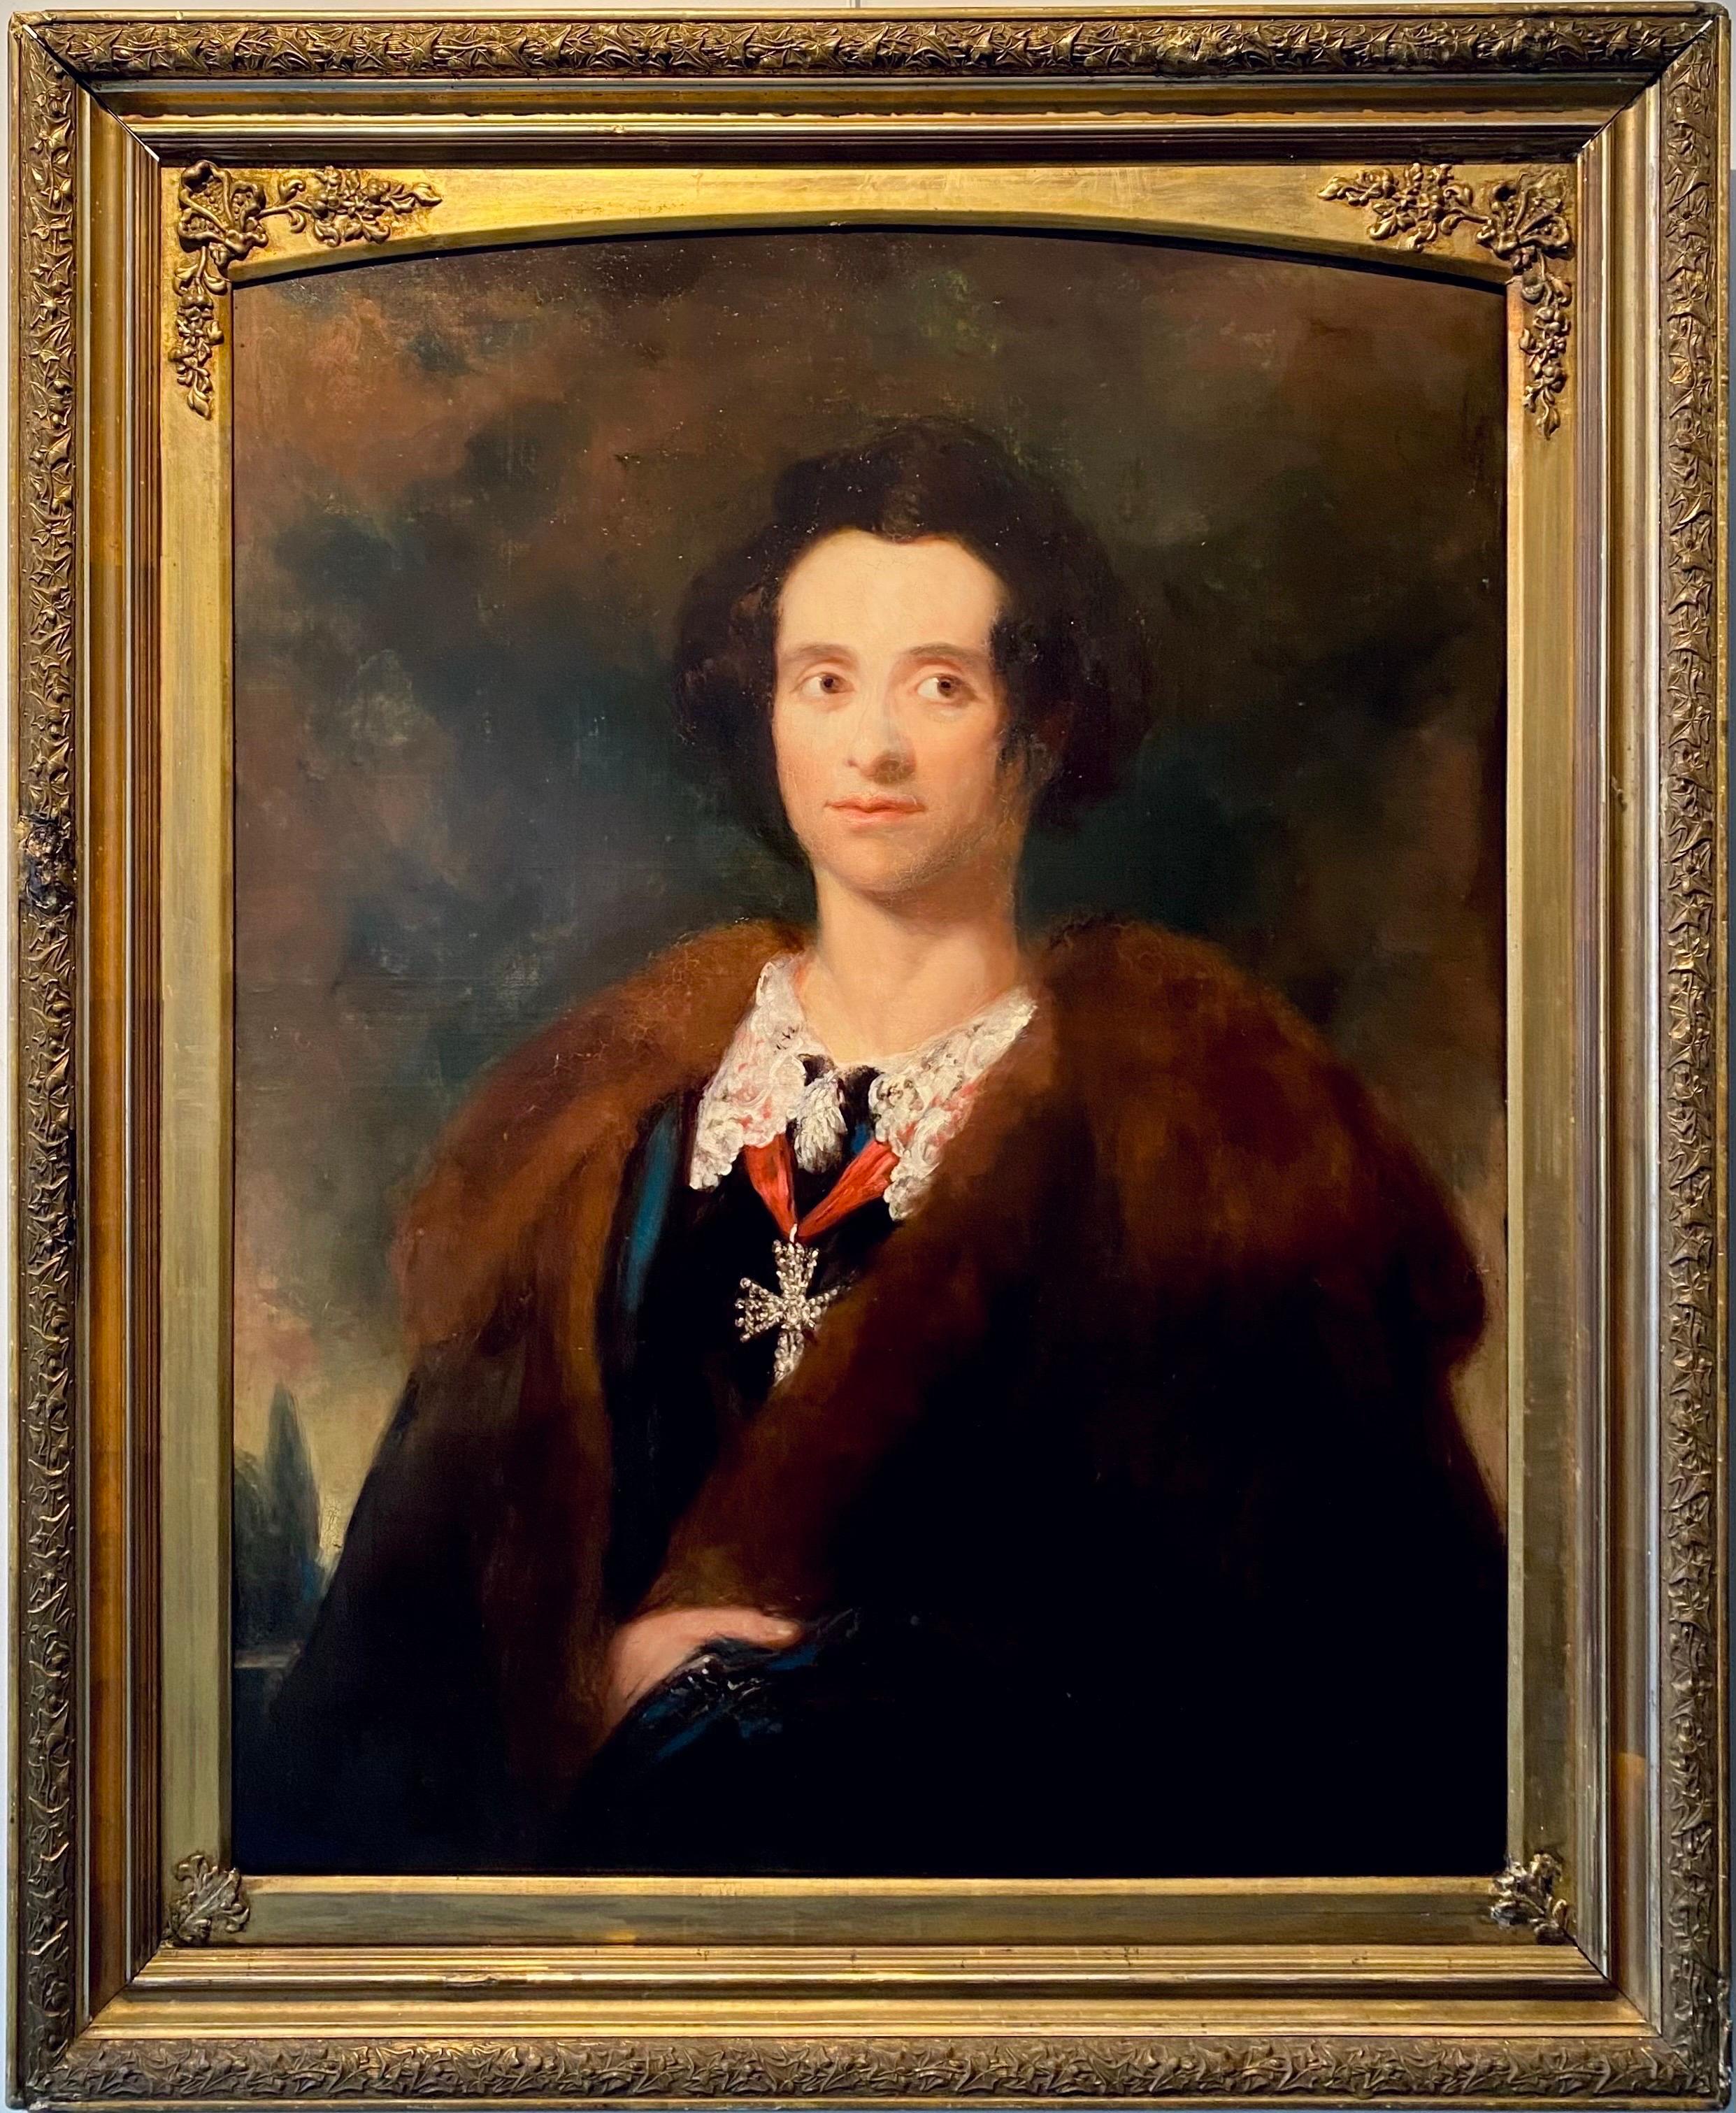 Portrait Painting (Circle of) Joshua Reynolds - Portrait britannique victorien du 19ème siècle d'un homme noble - Anglais